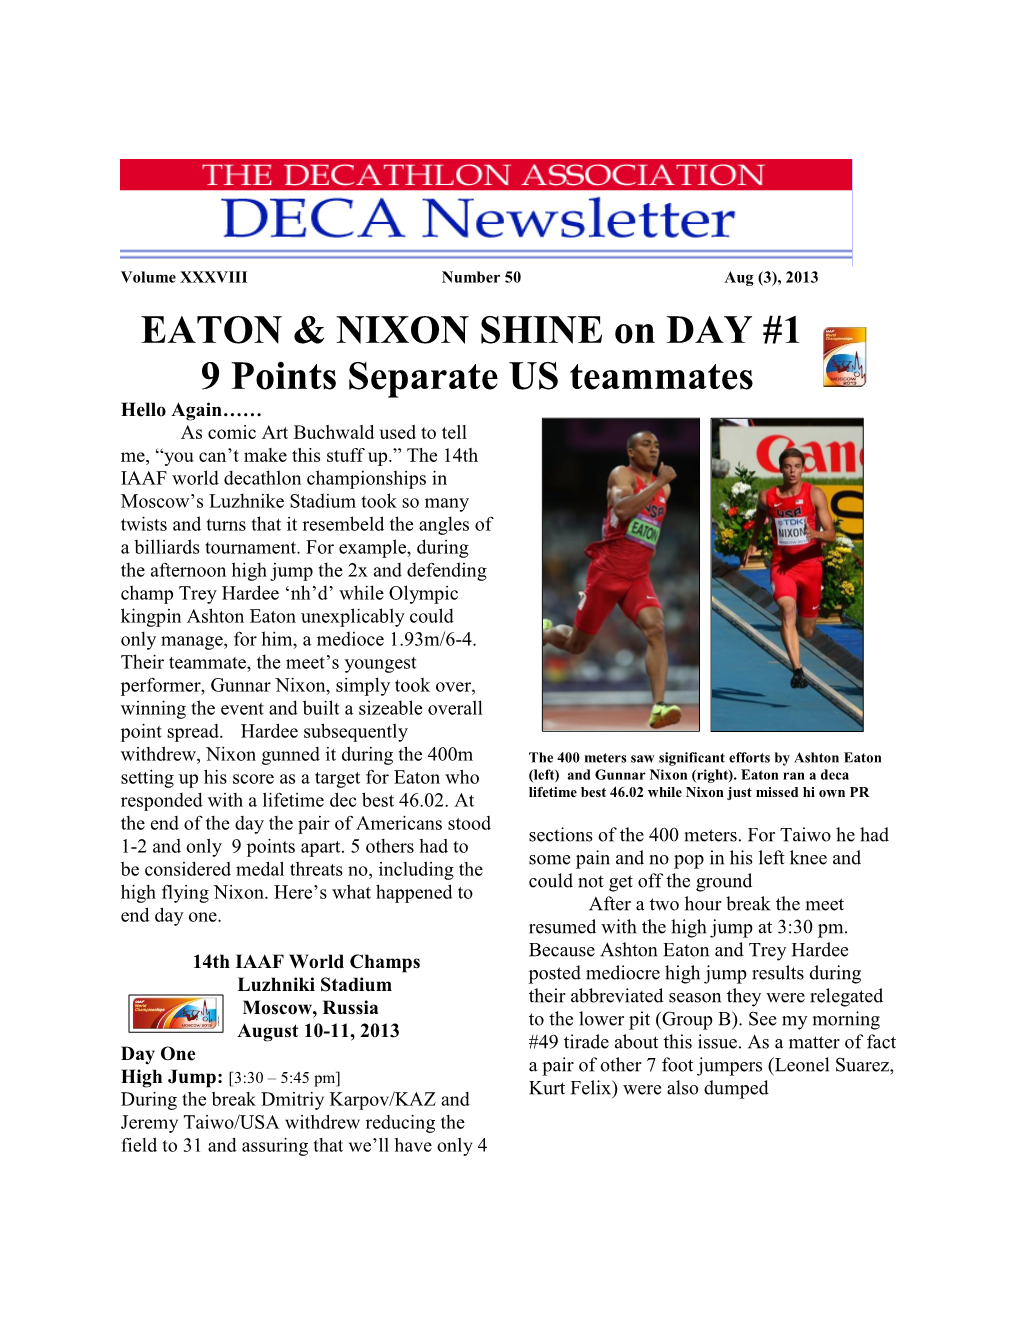 EATON & NIXON SHINE on DAY #1 9 Points Separate US Teammates